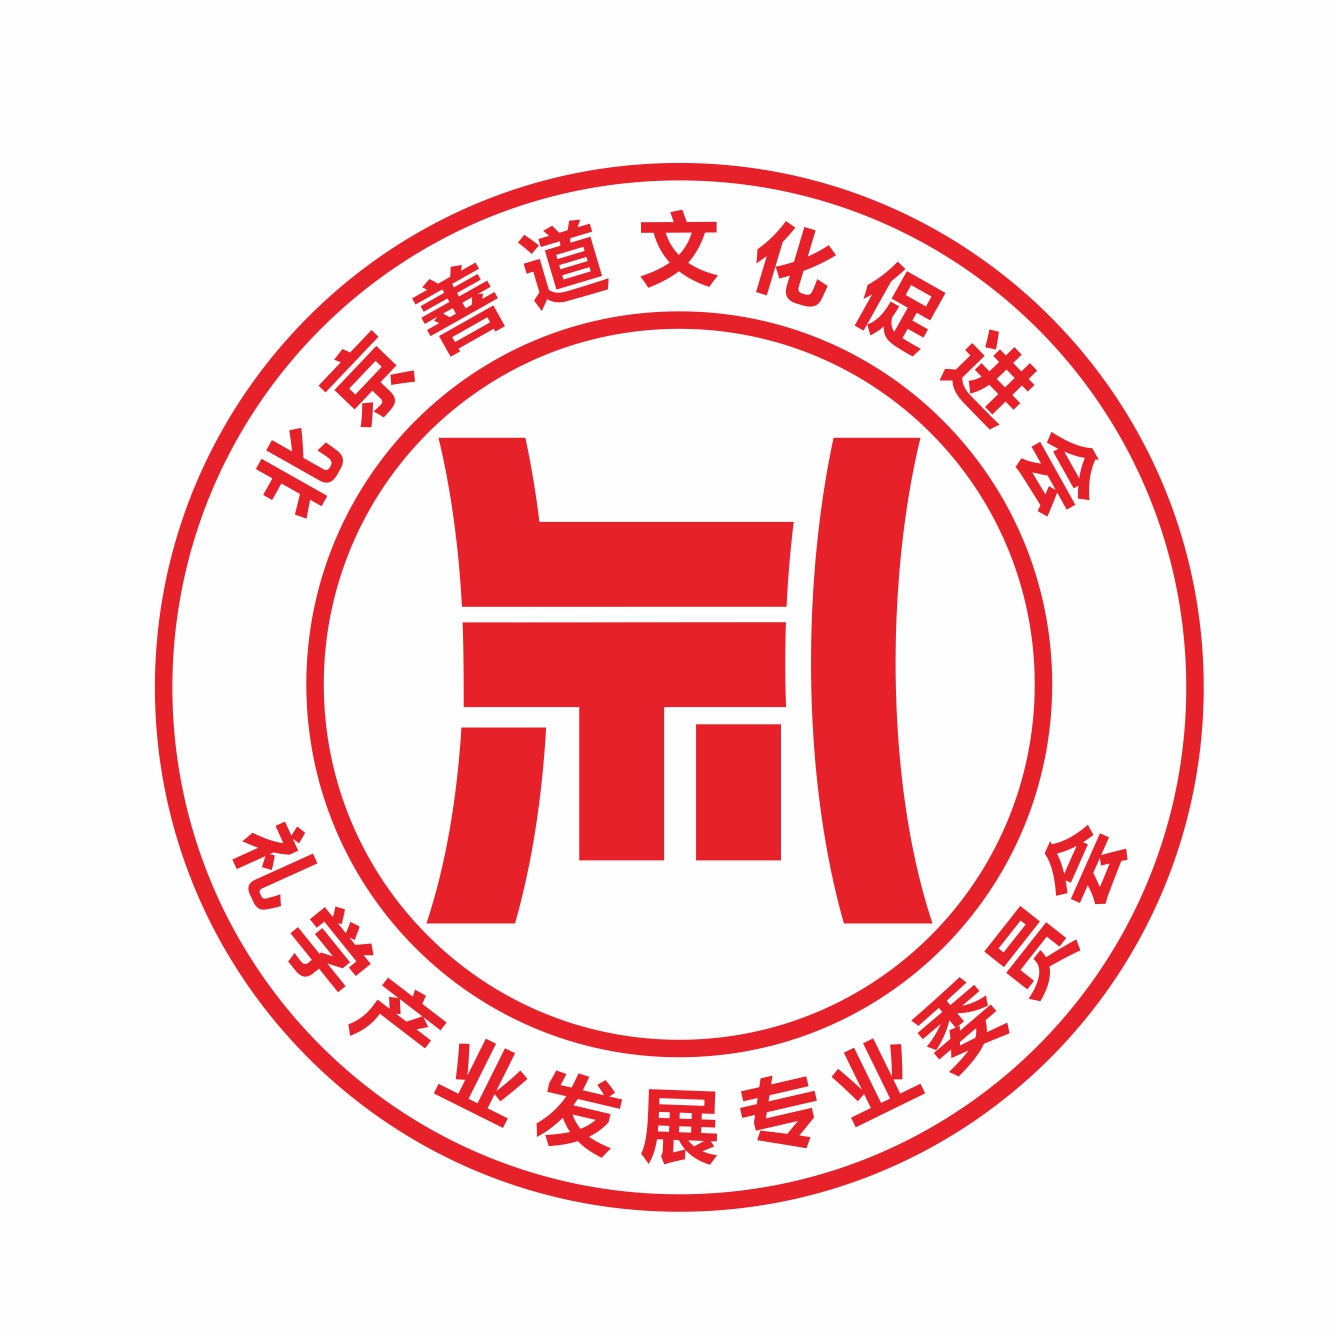 北京善道文化促進會禮學產業發展專委會